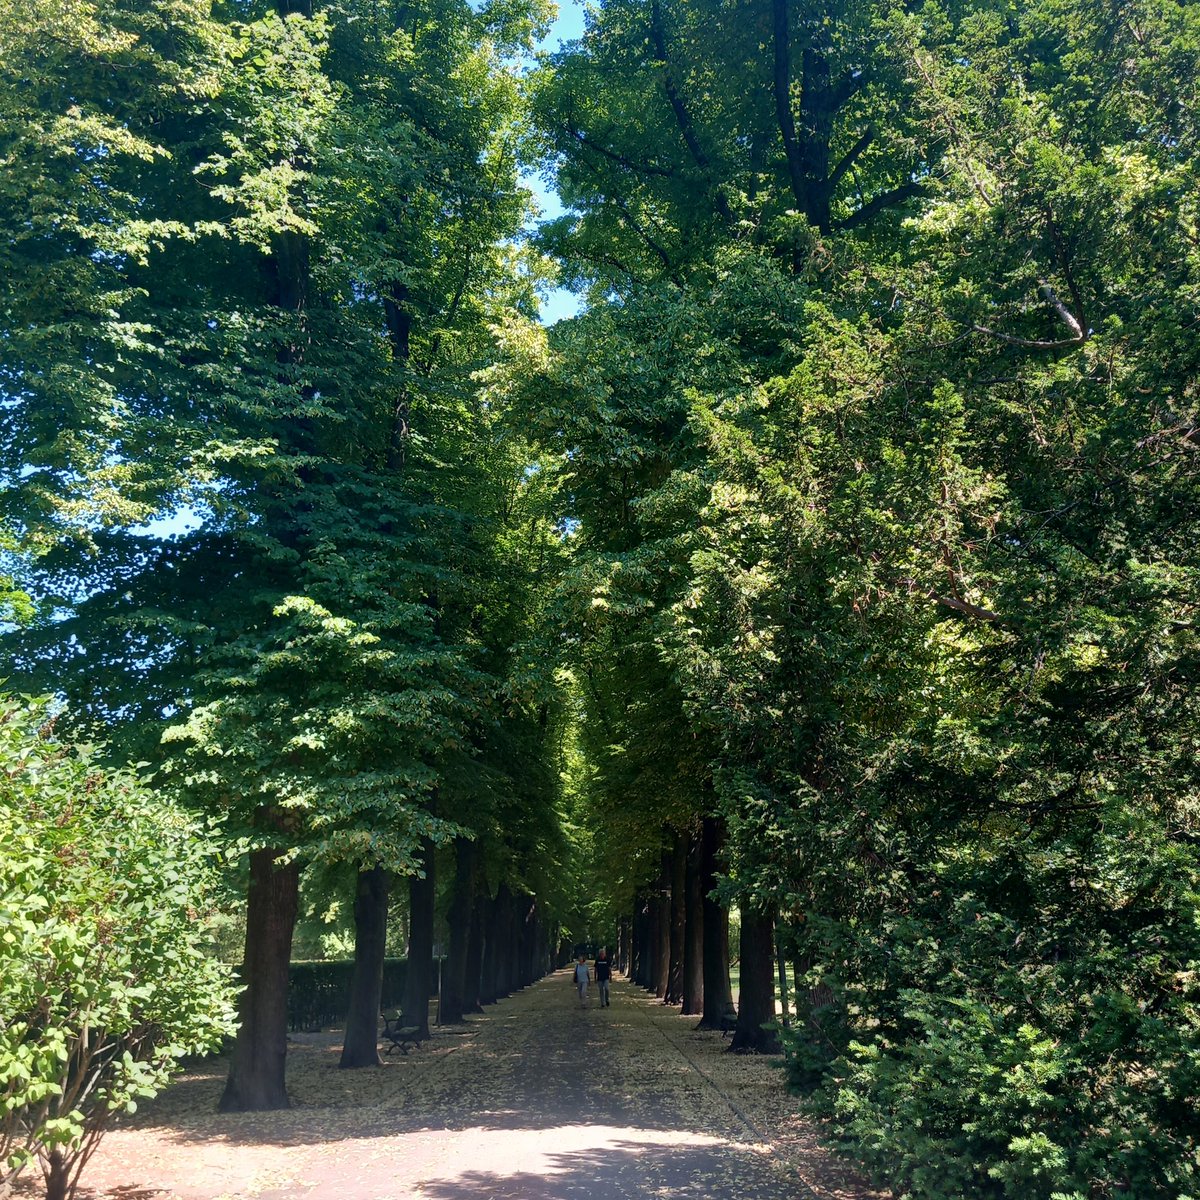 castle park  - Berlin  Biesdorf  -
*  linden  avenue   *              🌳🌳🌳
#Germany #Berlin #castlepark 
#park #linden #lindenavenue 
#beauty #summer #NatureBeauty 
#photo #green #nature #love